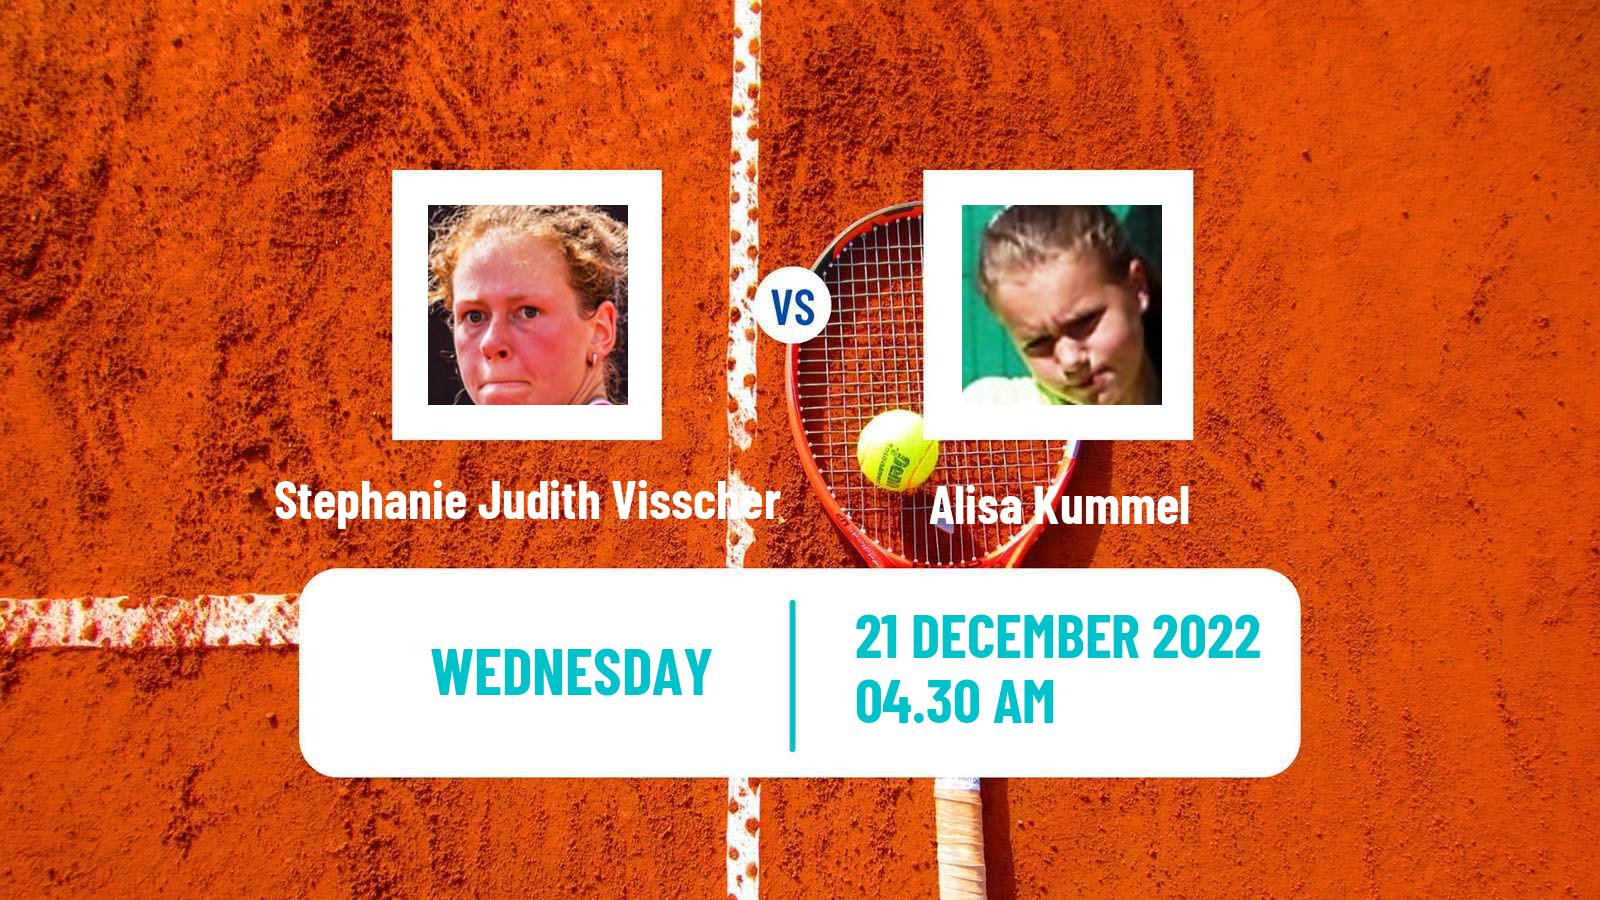 Tennis ITF Tournaments Stephanie Judith Visscher - Alisa Kummel